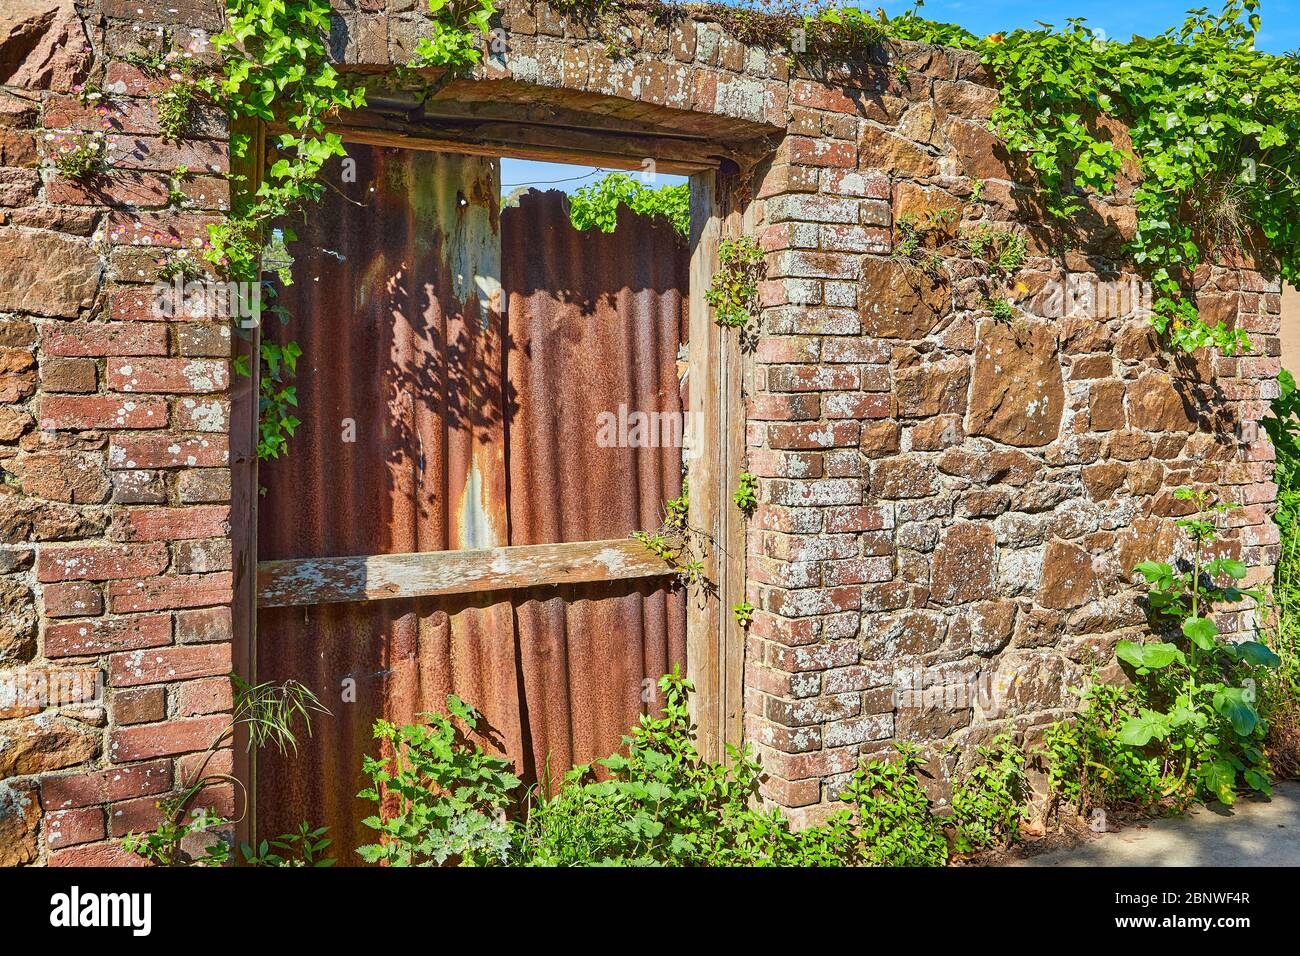 Image d'un vieux mur en pierre avec une vieille porte avec un cadre en brique qui a été bloqué avec des jets de fer forgé rouillé au soleil. Banque D'Images